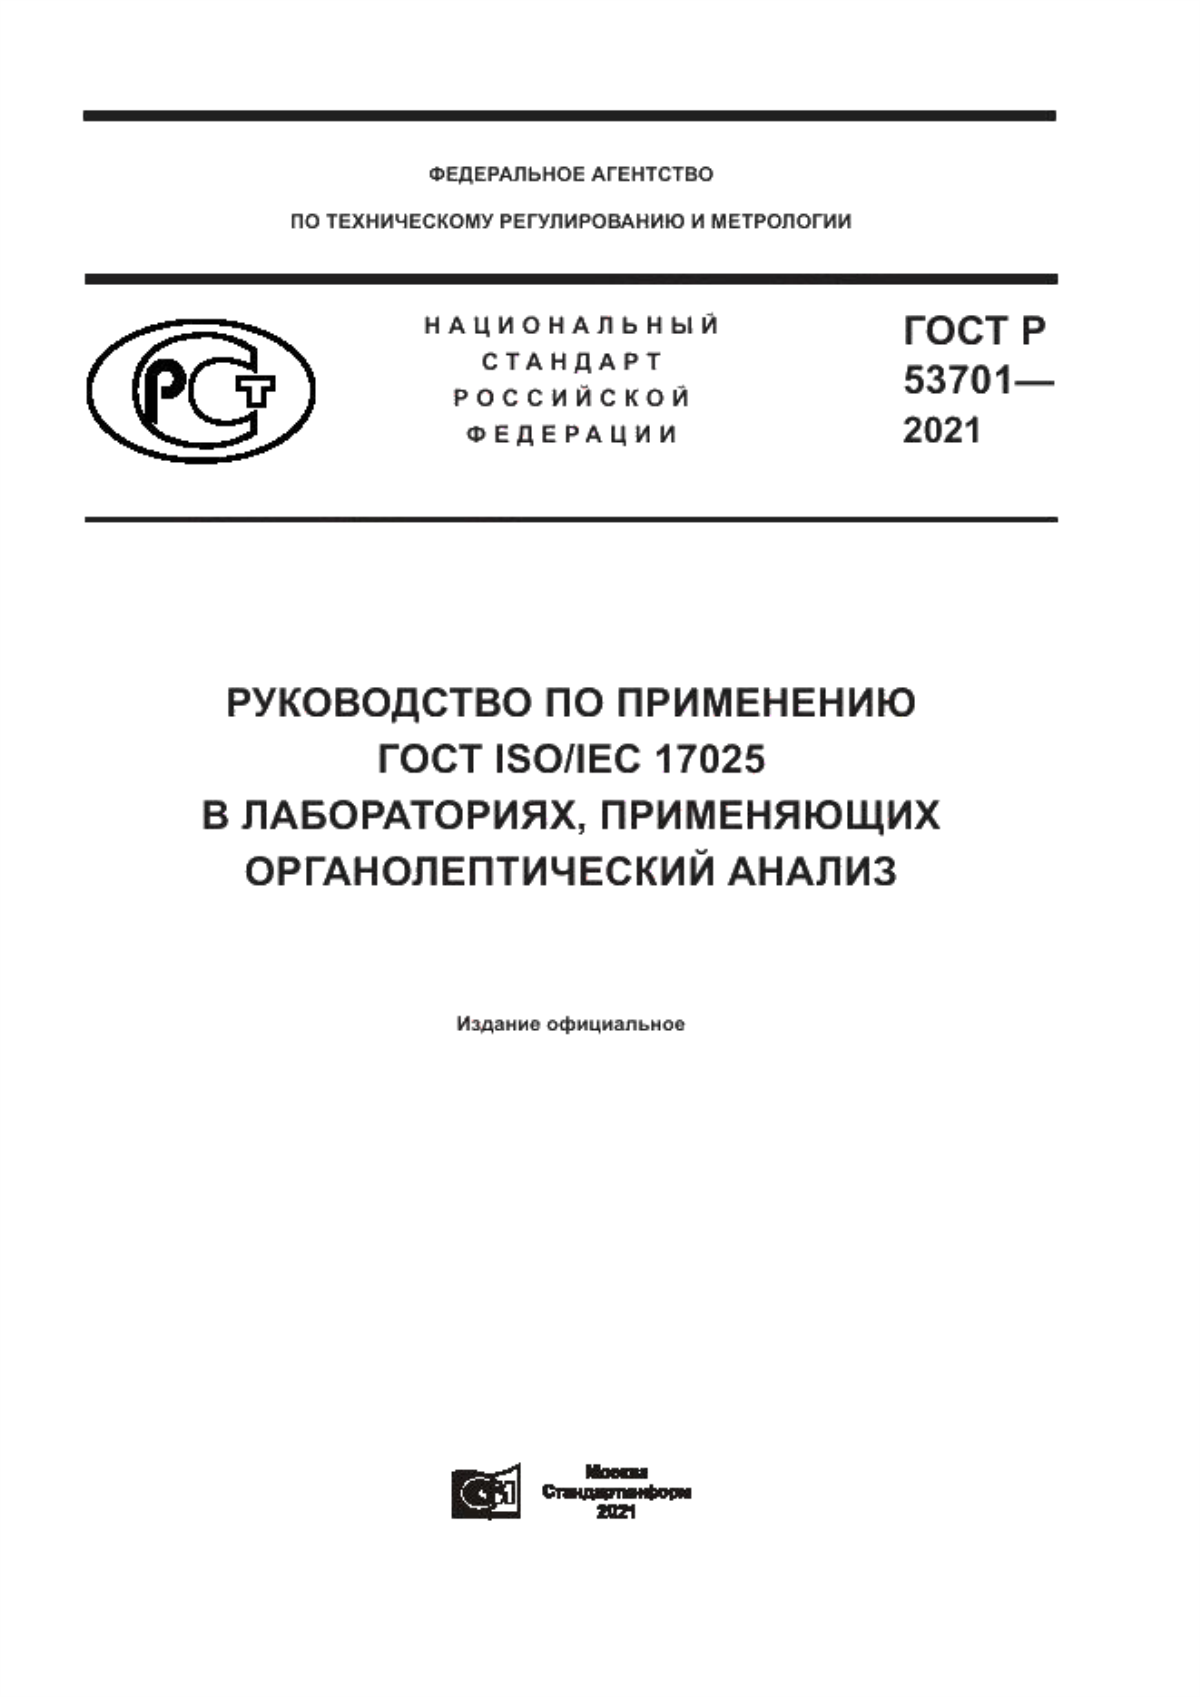 ГОСТ Р 53701-2021 Руководство по применению ГОСТ ISO/IEC 17025 в лабораториях, применяющих органолептический анализ